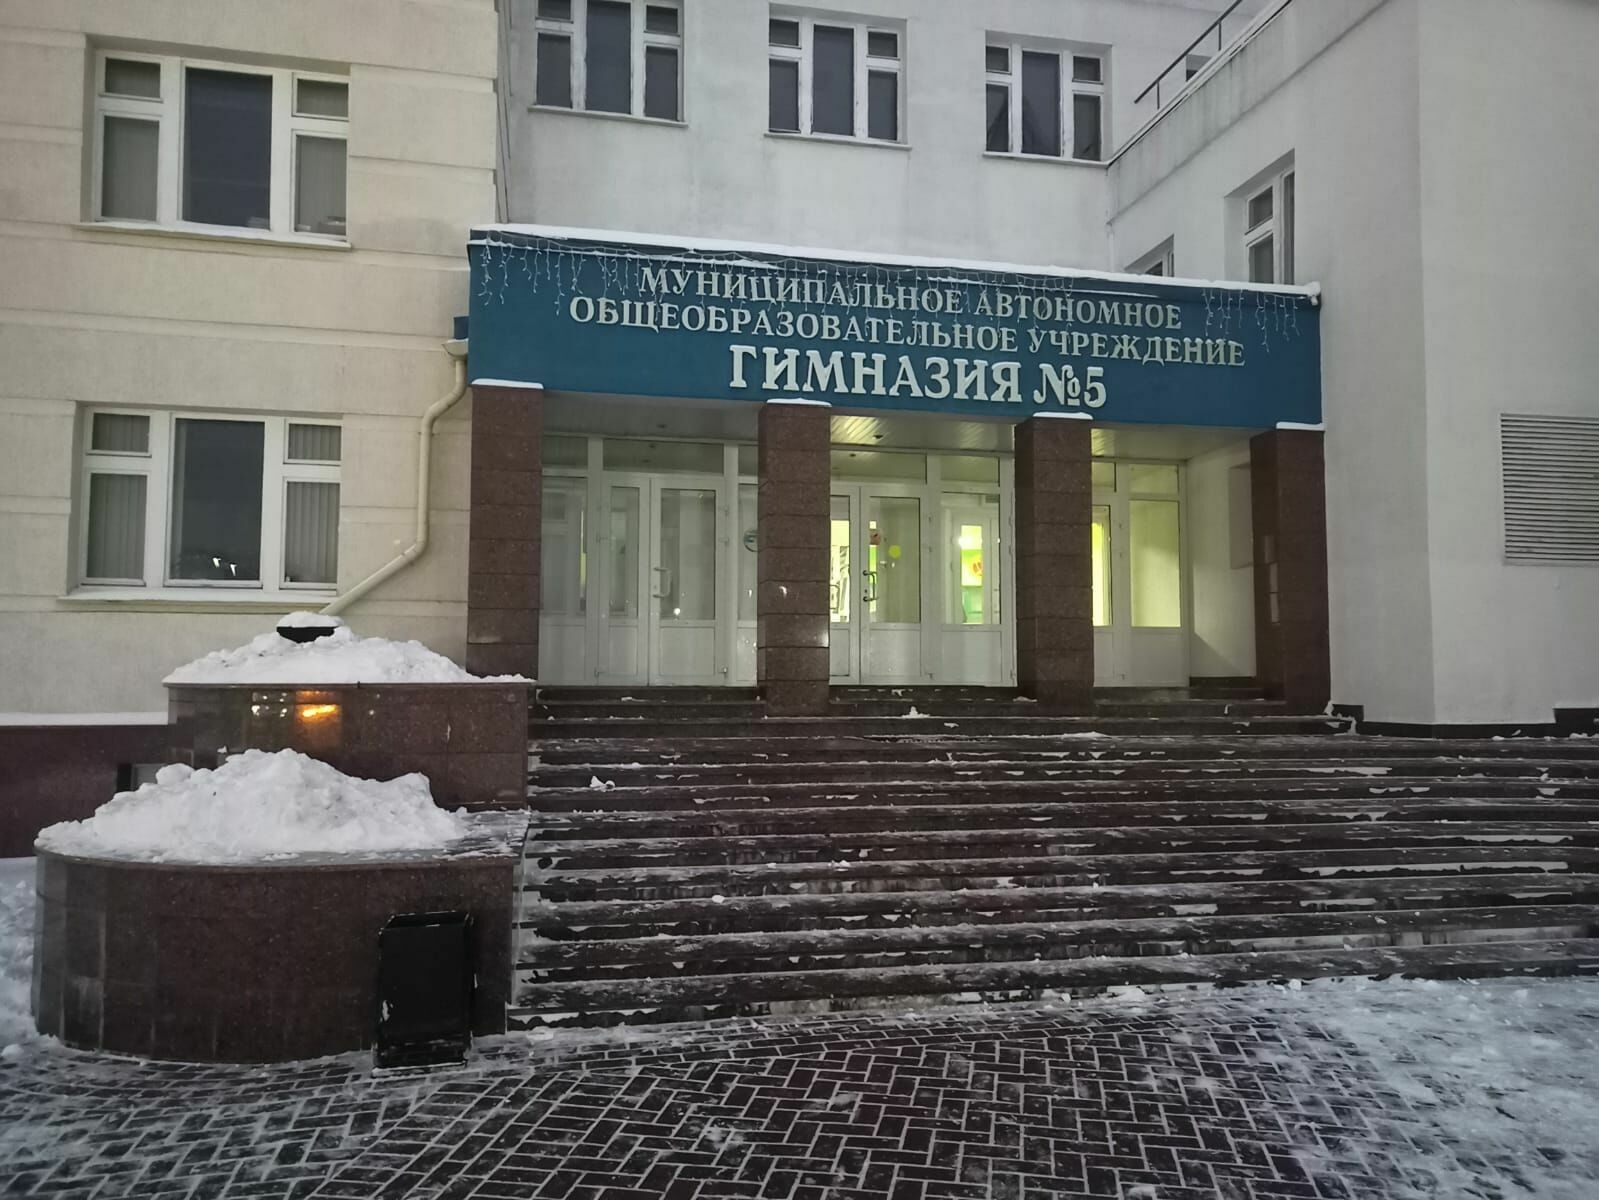 Сына чувашского министра заподозрили в подготовке кровавой бойни в школе